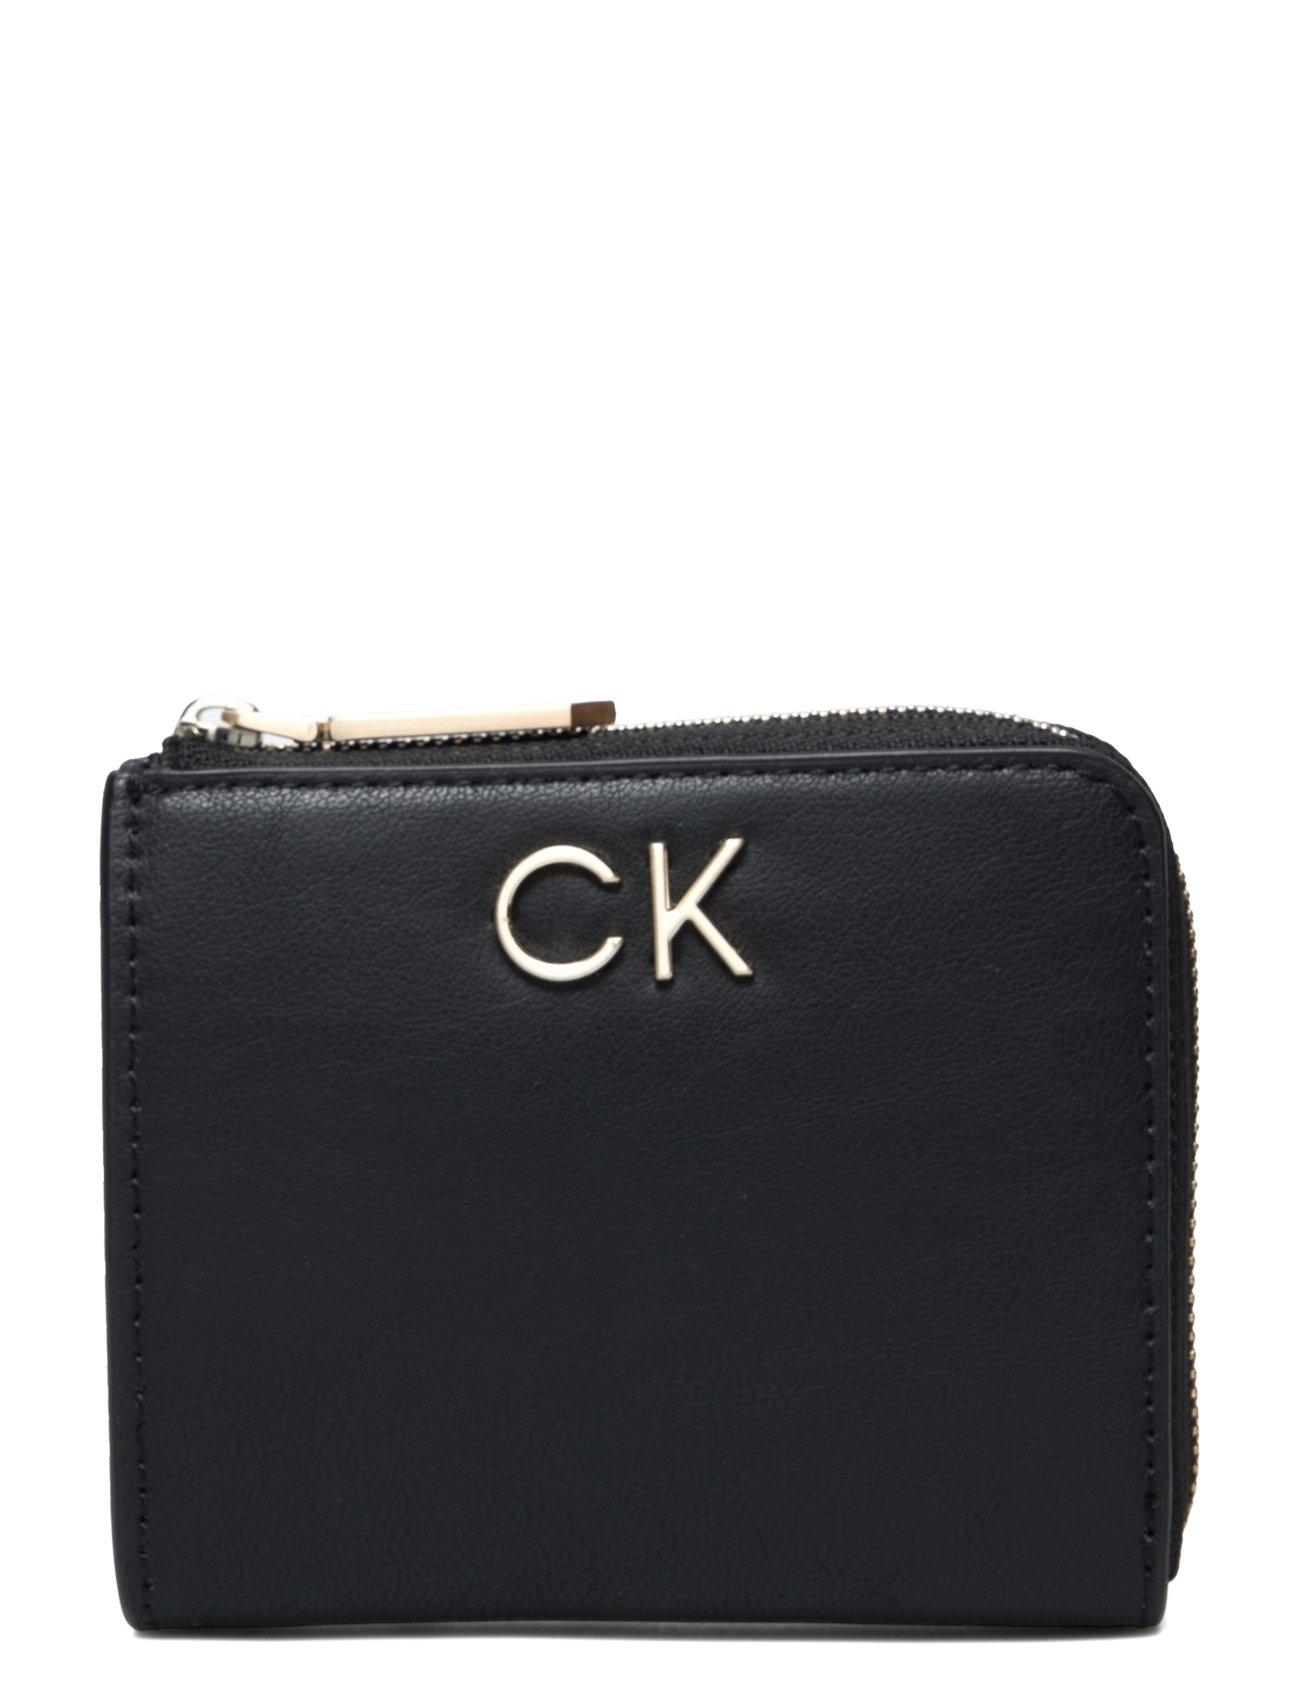 Re-Lock Za Wallet Sm Bags Card Holders & Wallets Wallets Black Calvin Klein